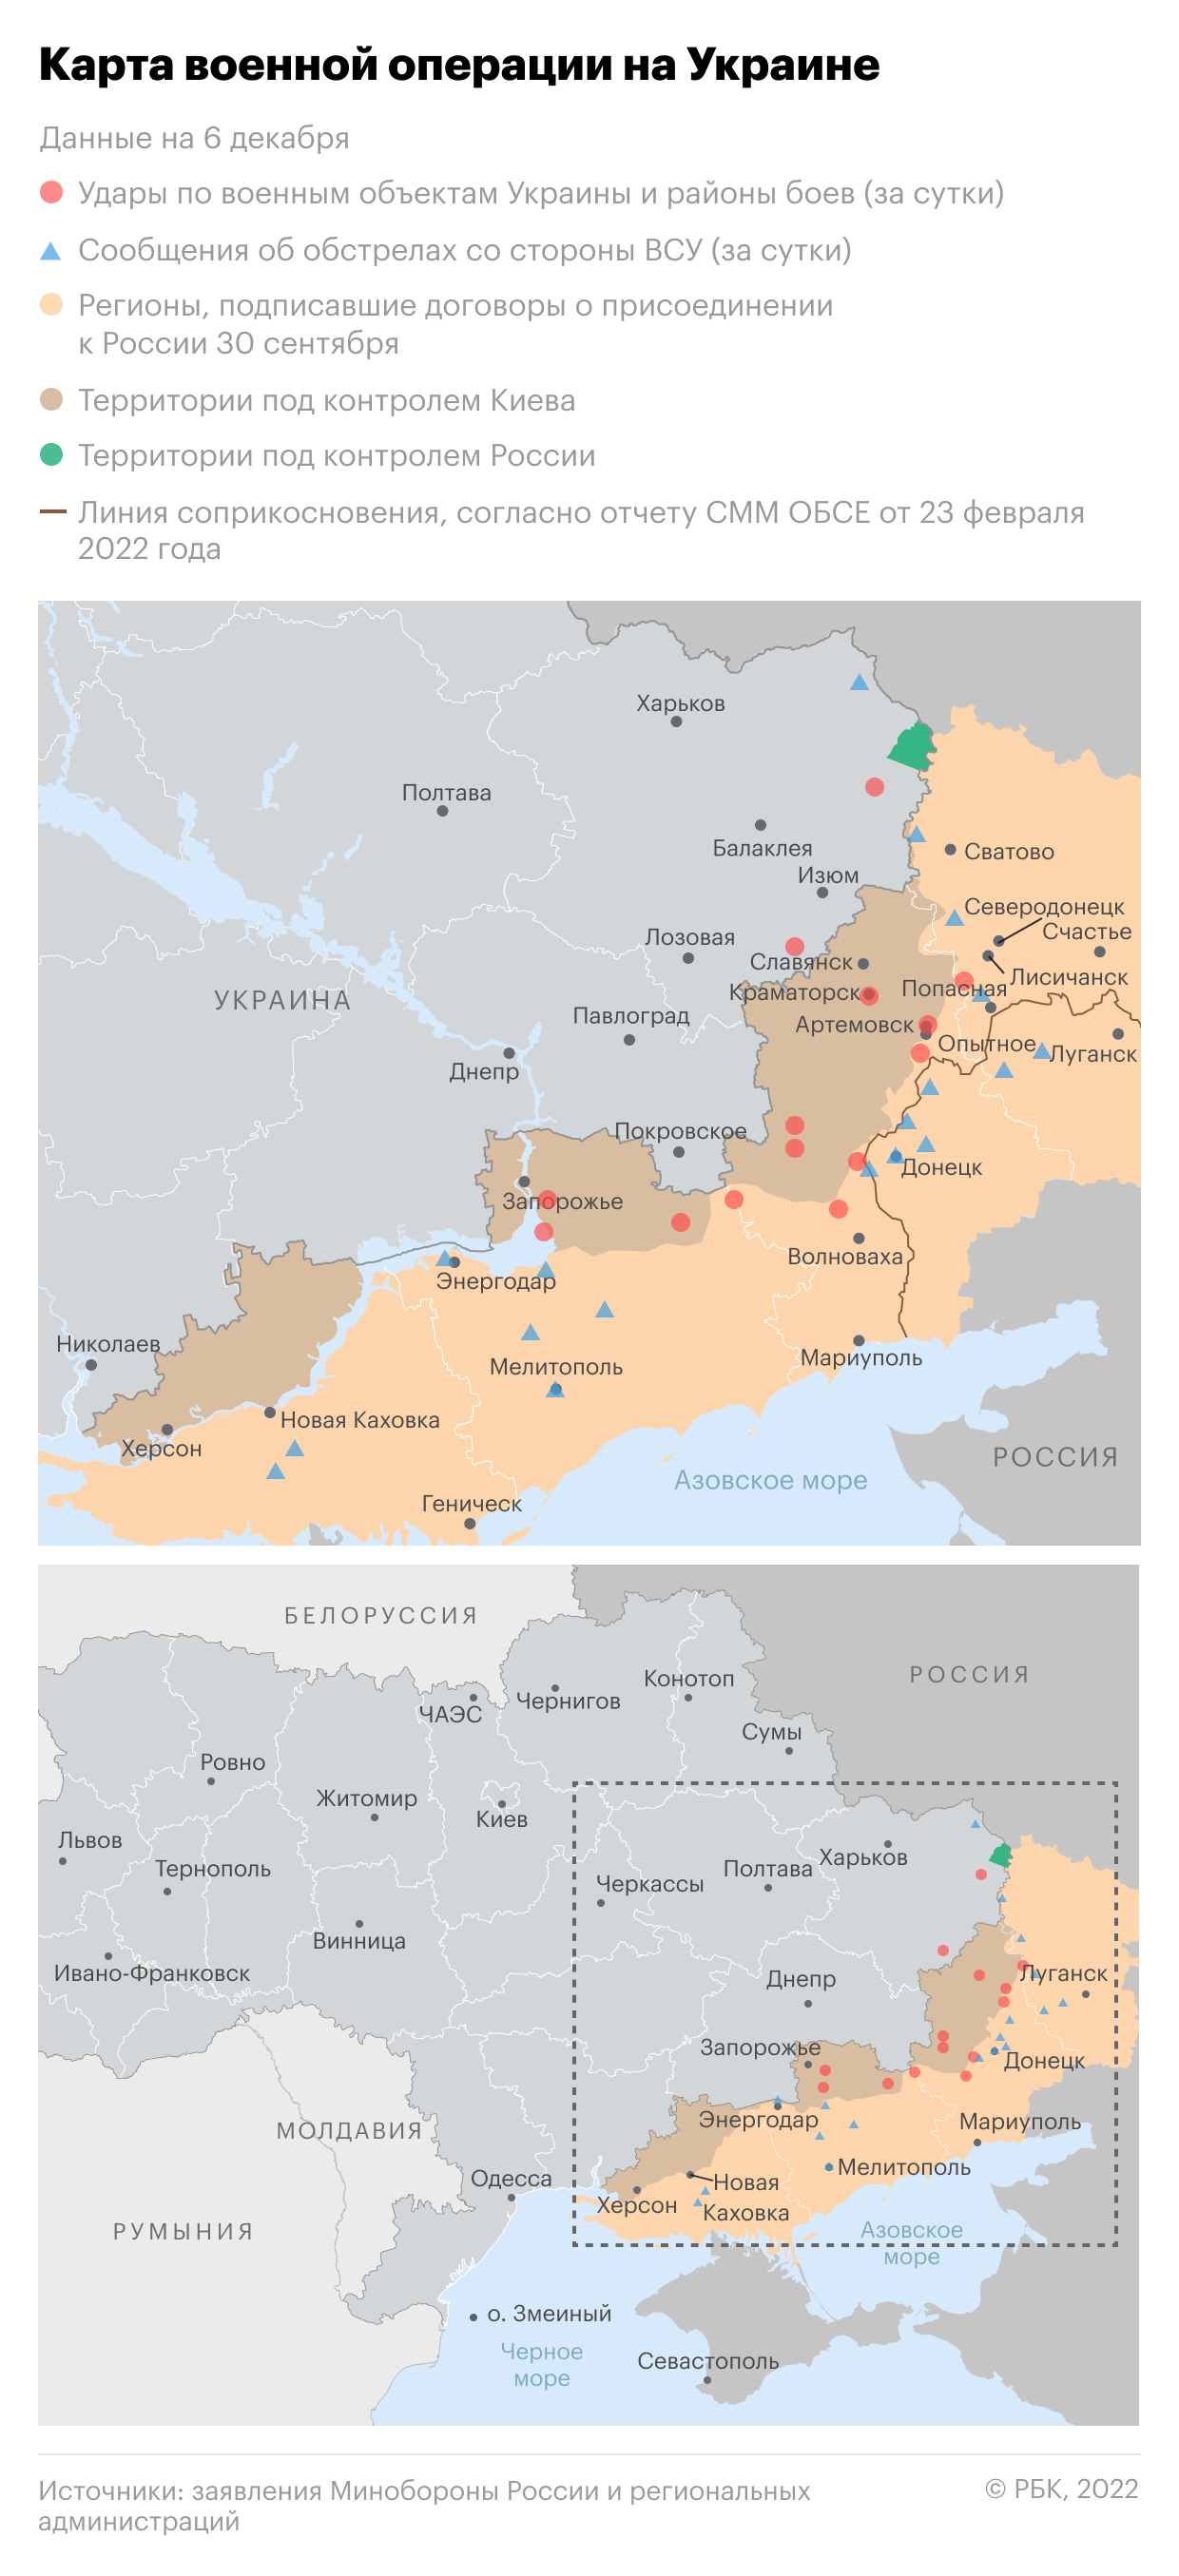 Кремль заявил, что вся территория ДНР будет считаться Россией